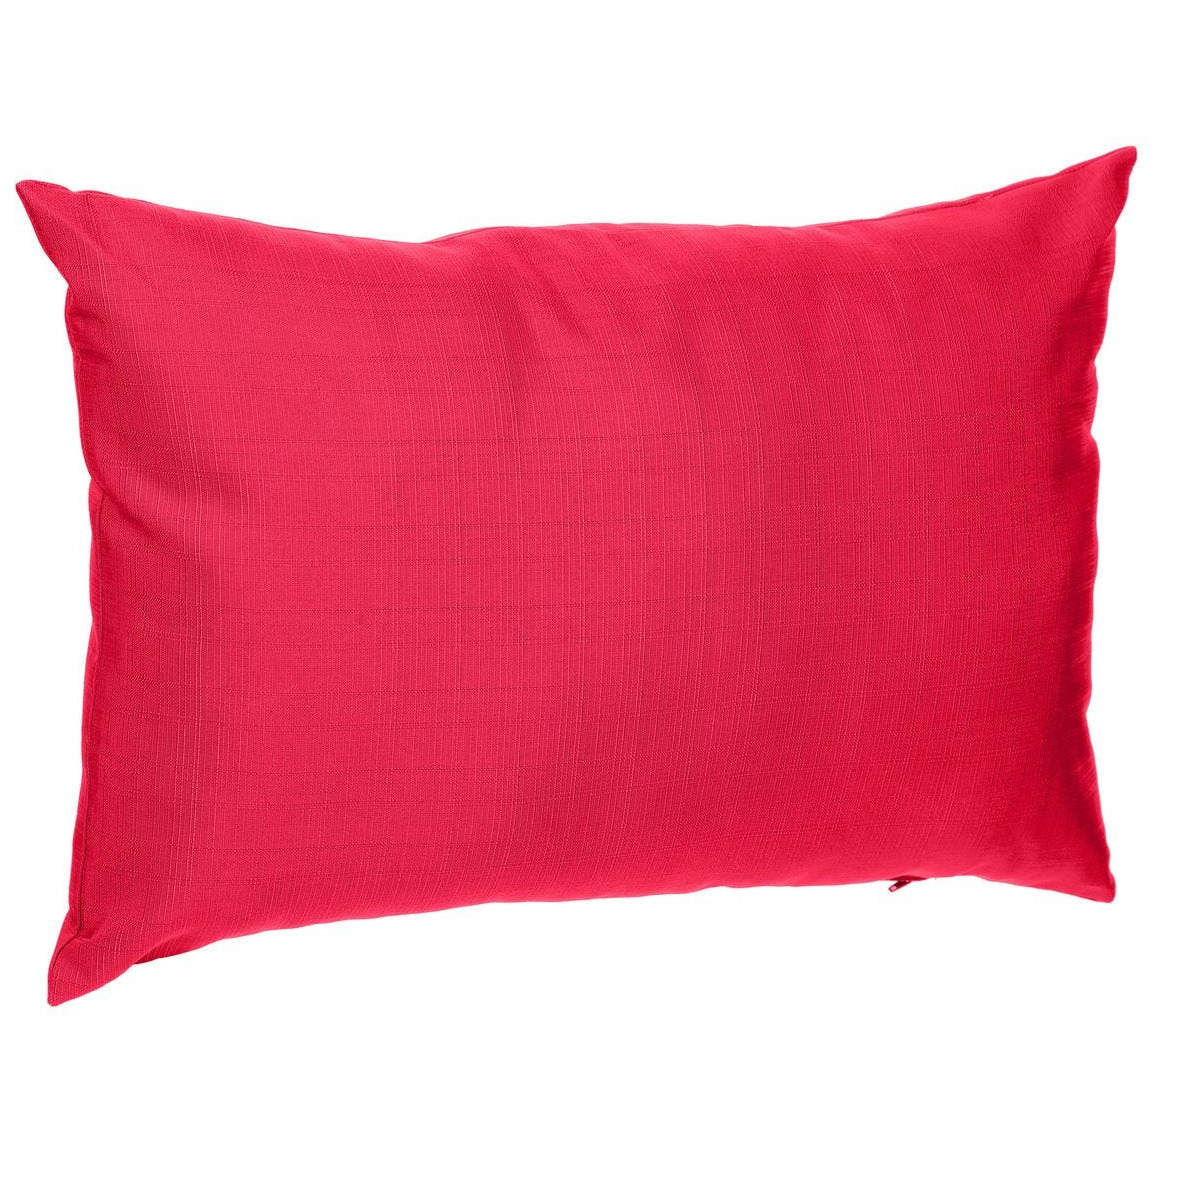 Bank-sier-tuin kussens voor binnen en buiten in de kleur rood 30 x 50 x 10 cm